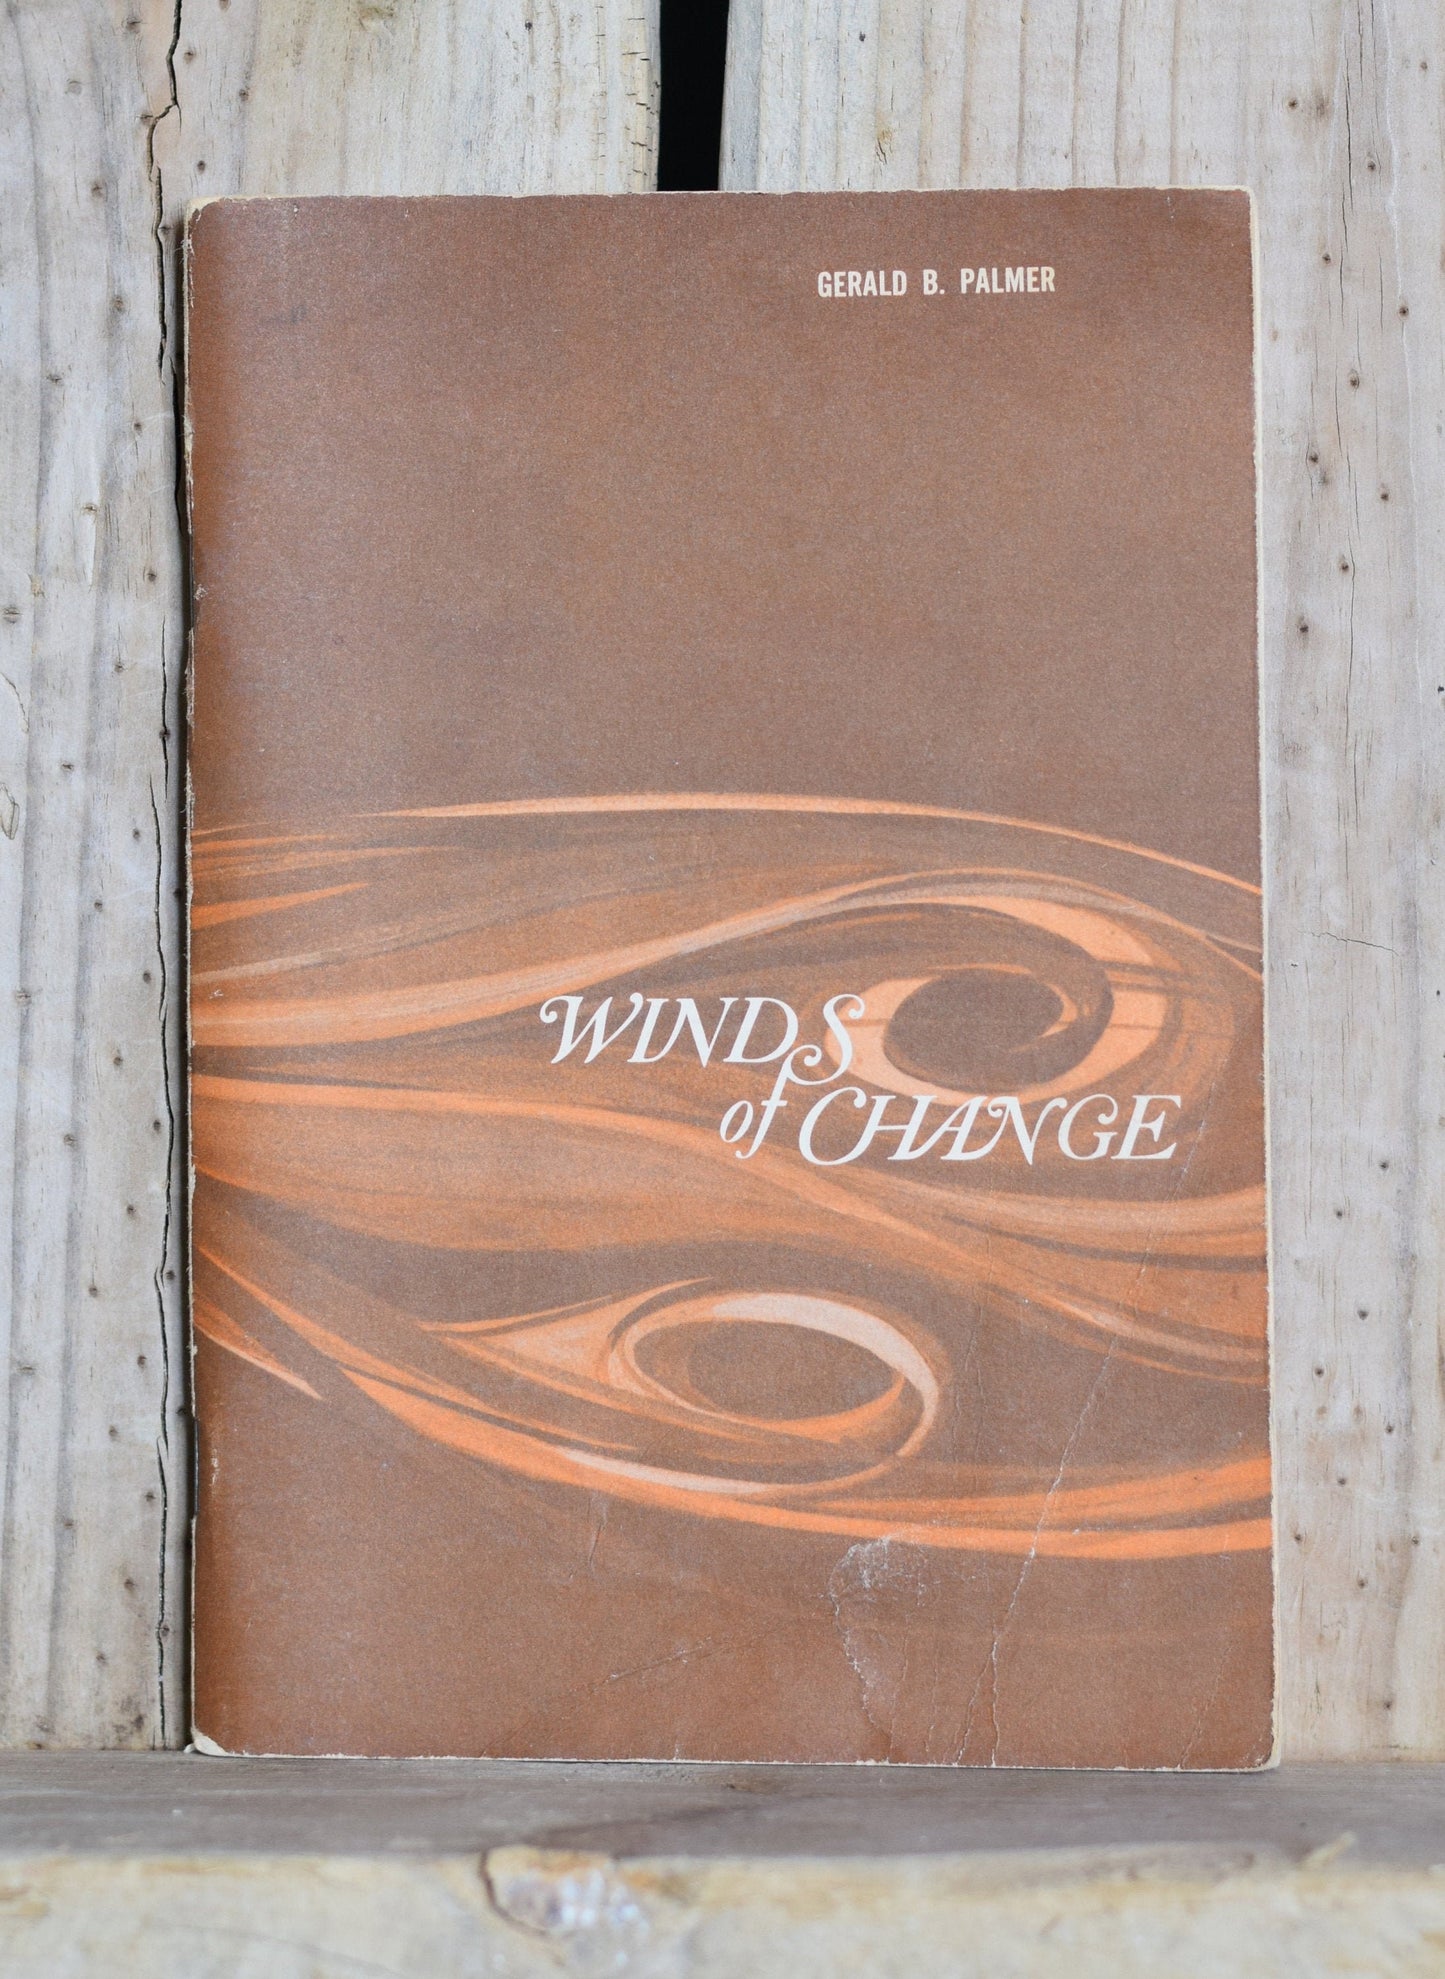 Vintage Fiction Paperback Novel: Gerald B Palmer - Winds of Change